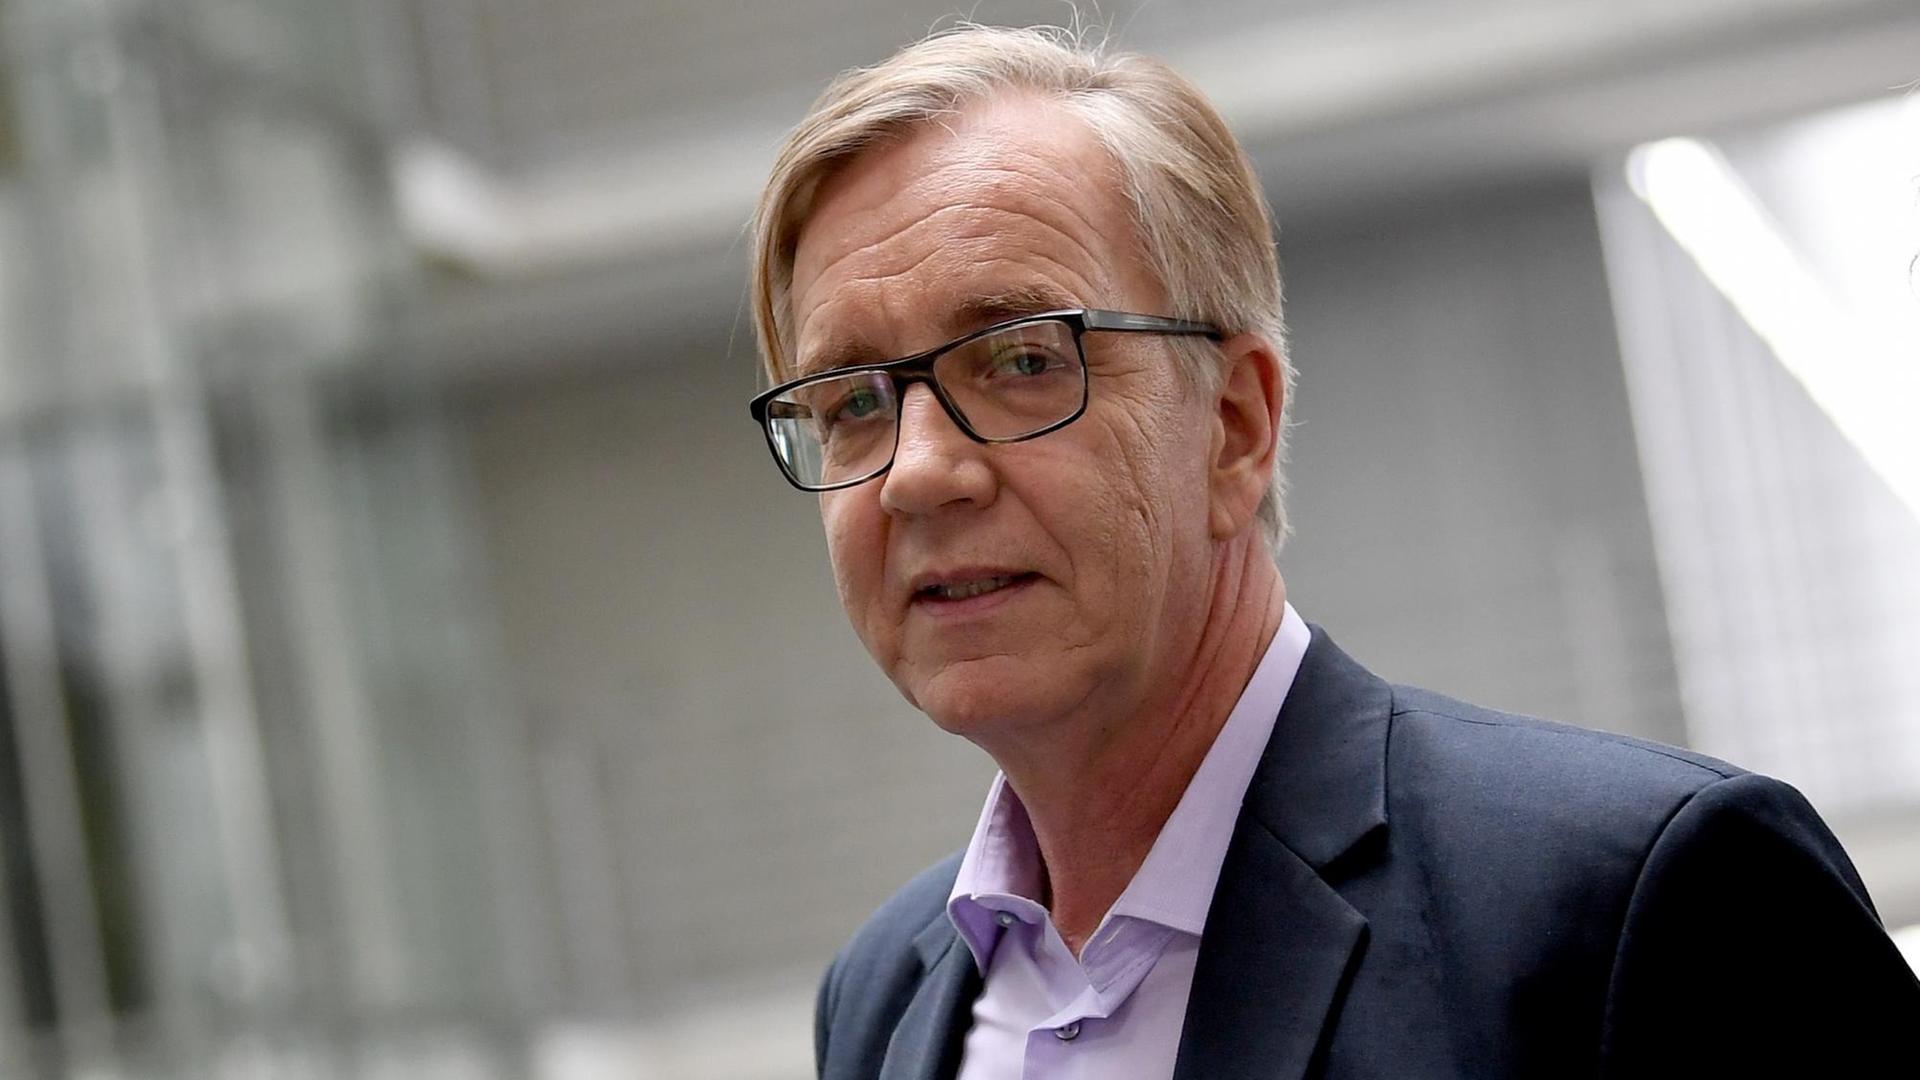 Zu sehen ist Dietmar Bartsch, Fraktionsvorsitzender der Partei Die Linke im Bundestag.